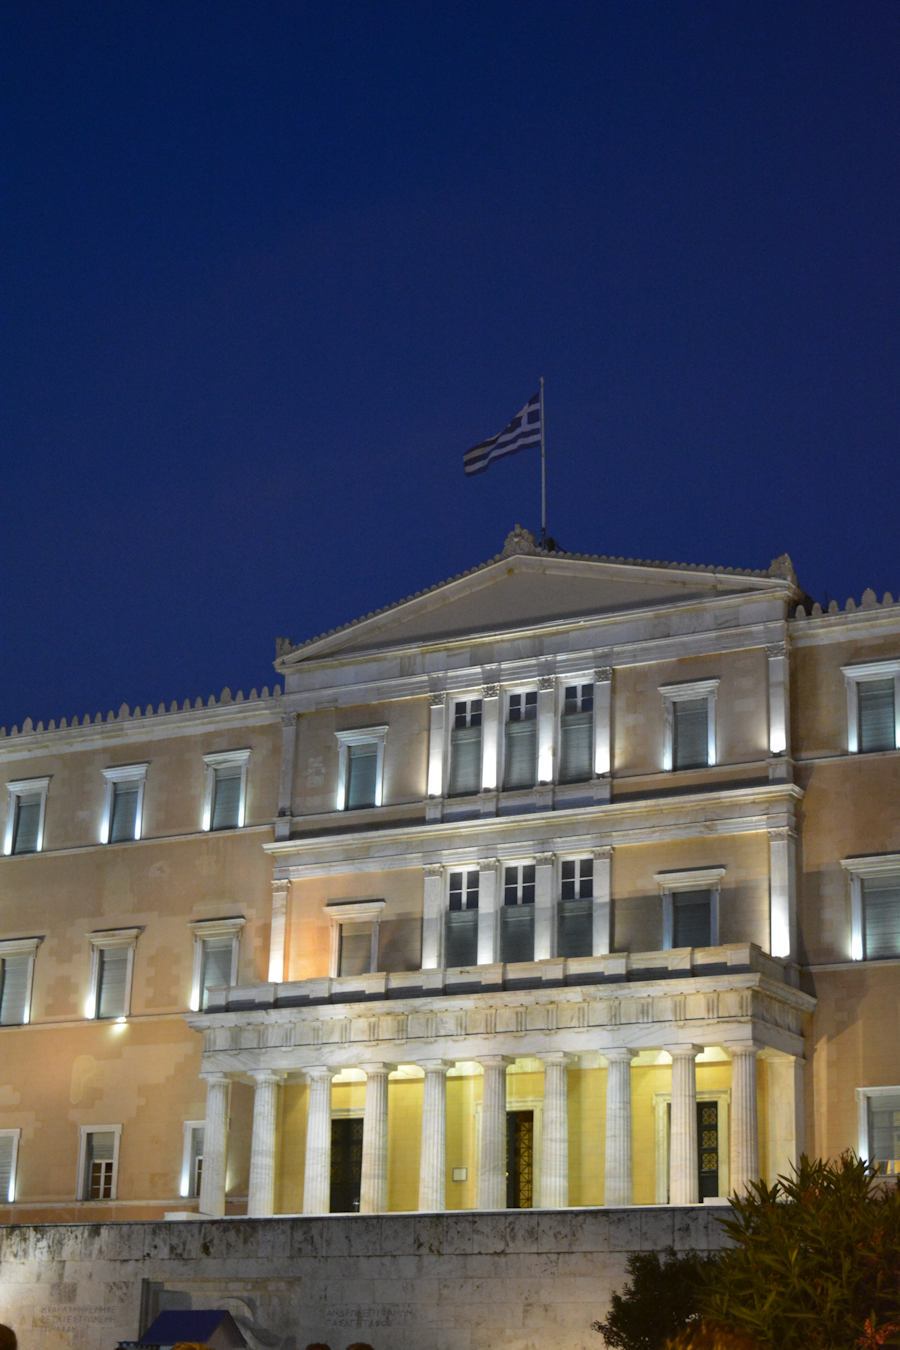 The Greek parliament